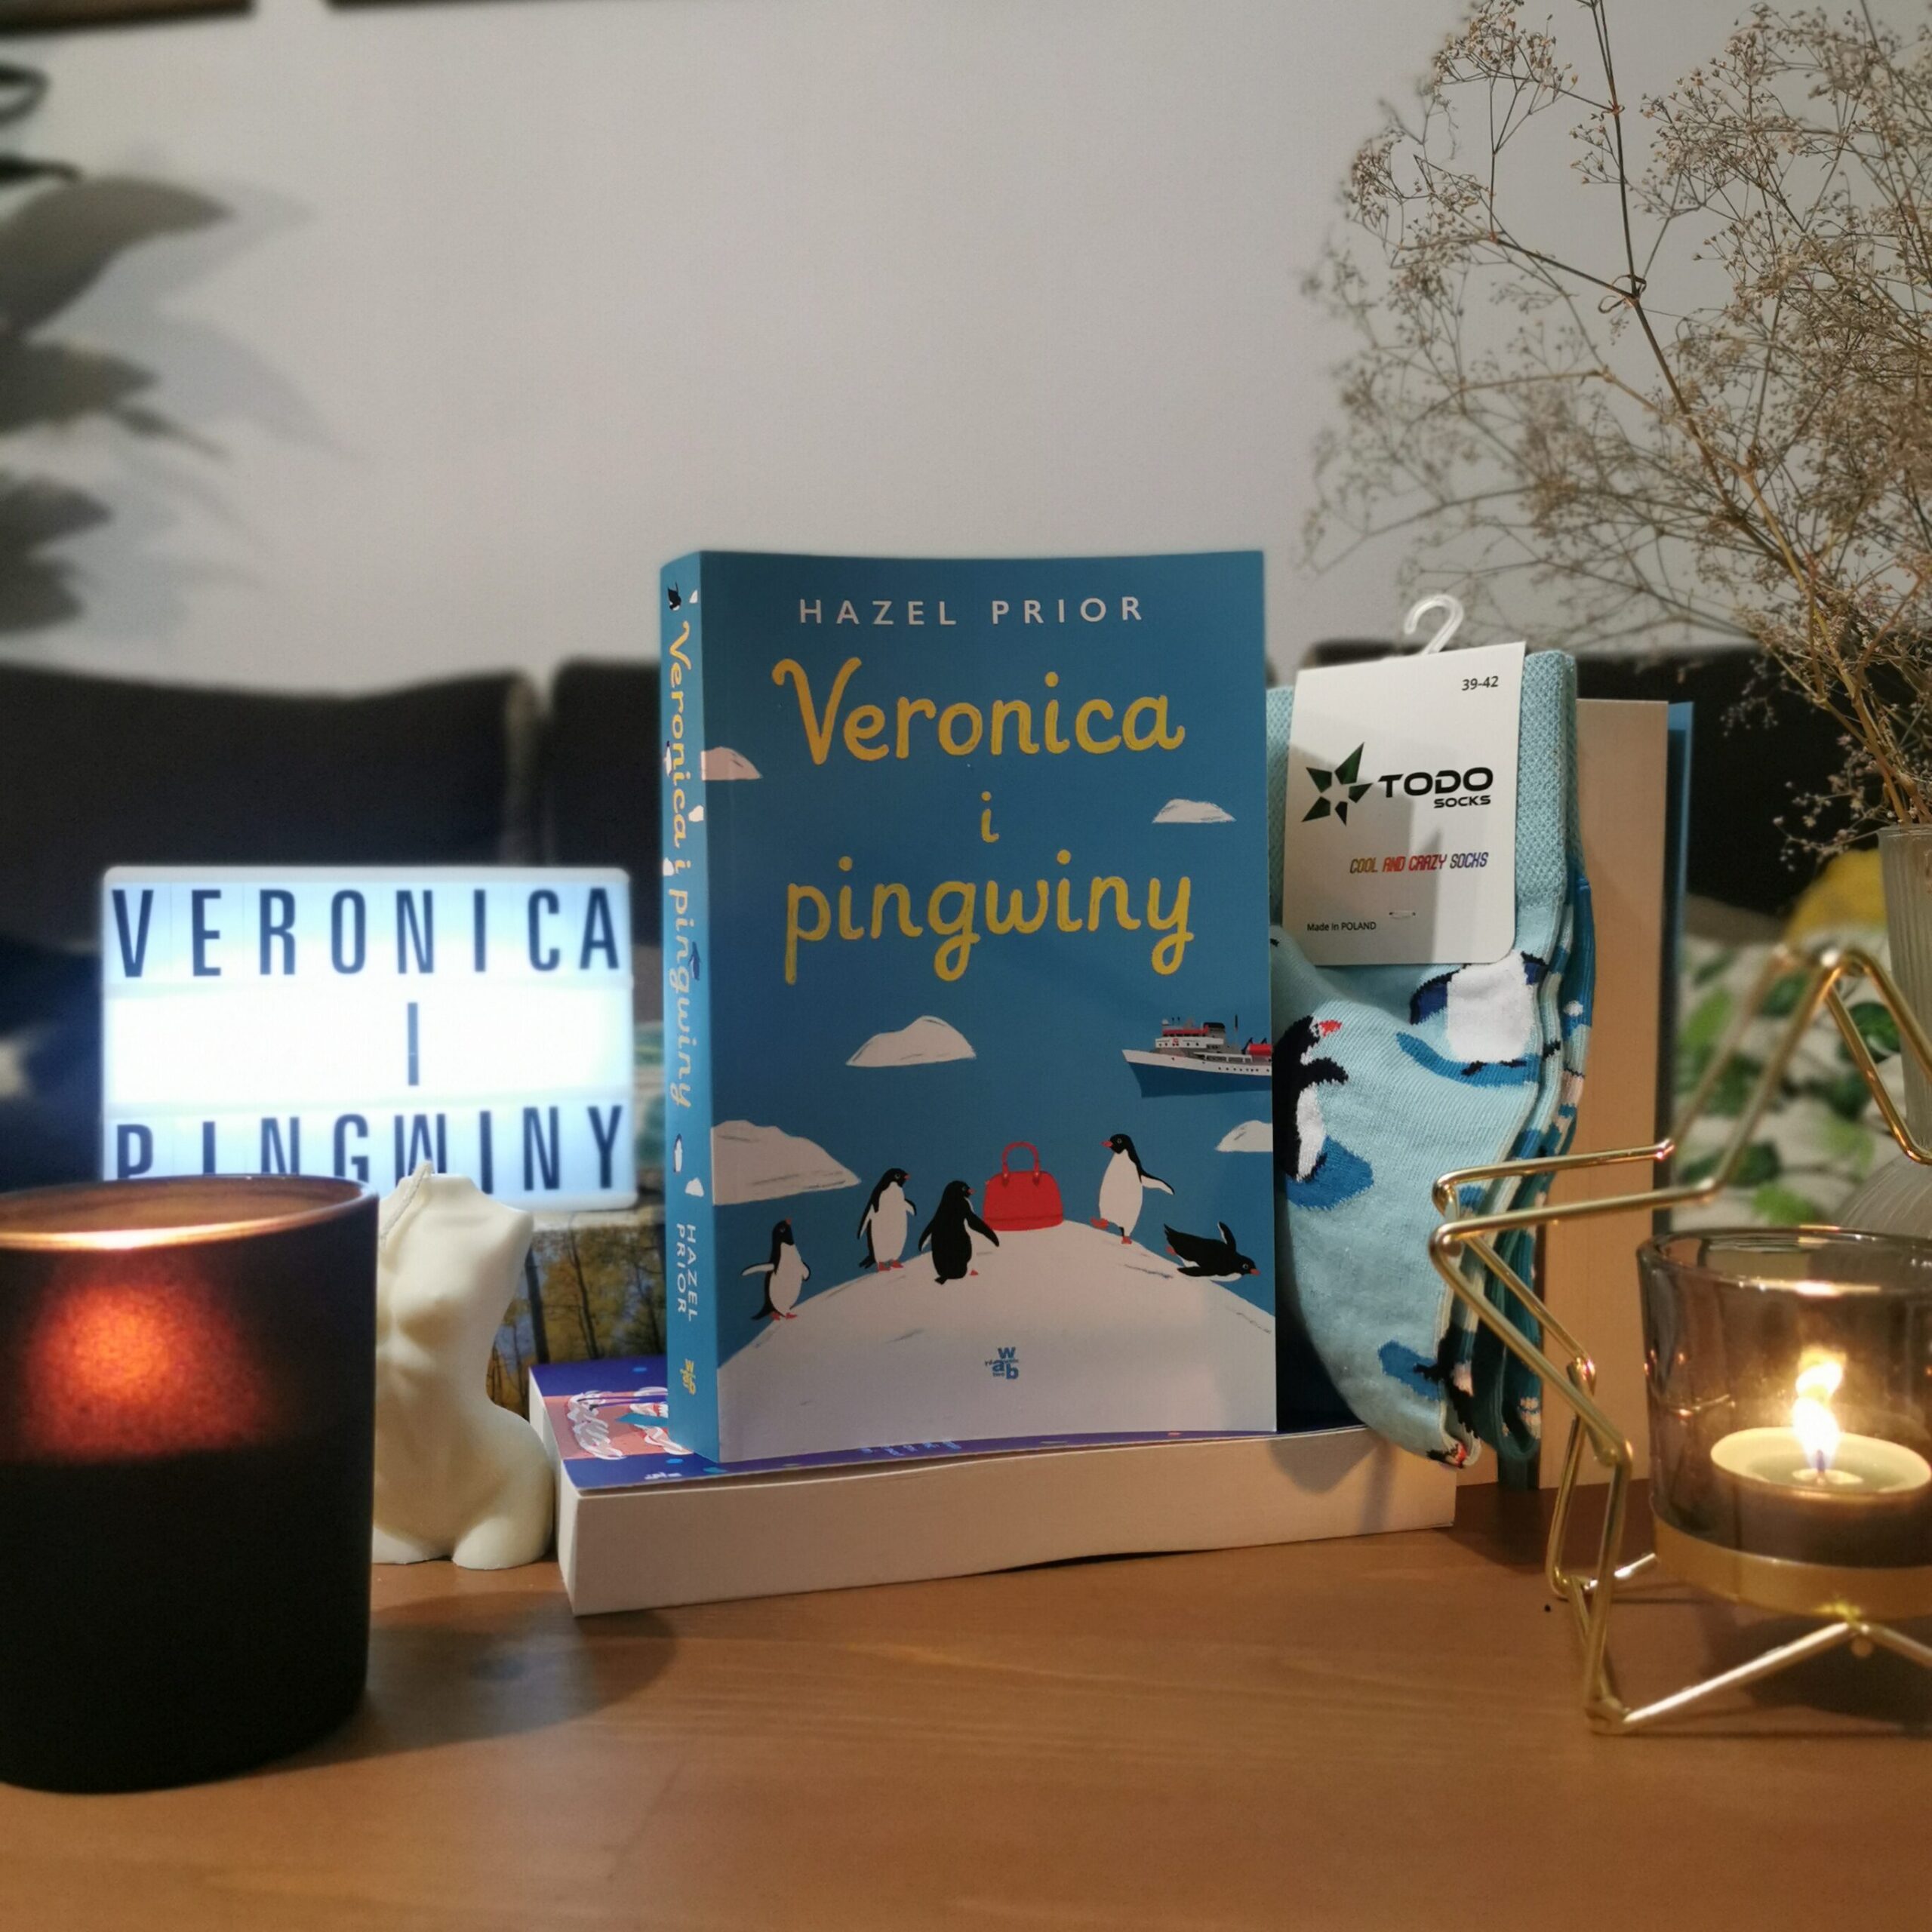 Veronica i pingwiny - Prior Hazel